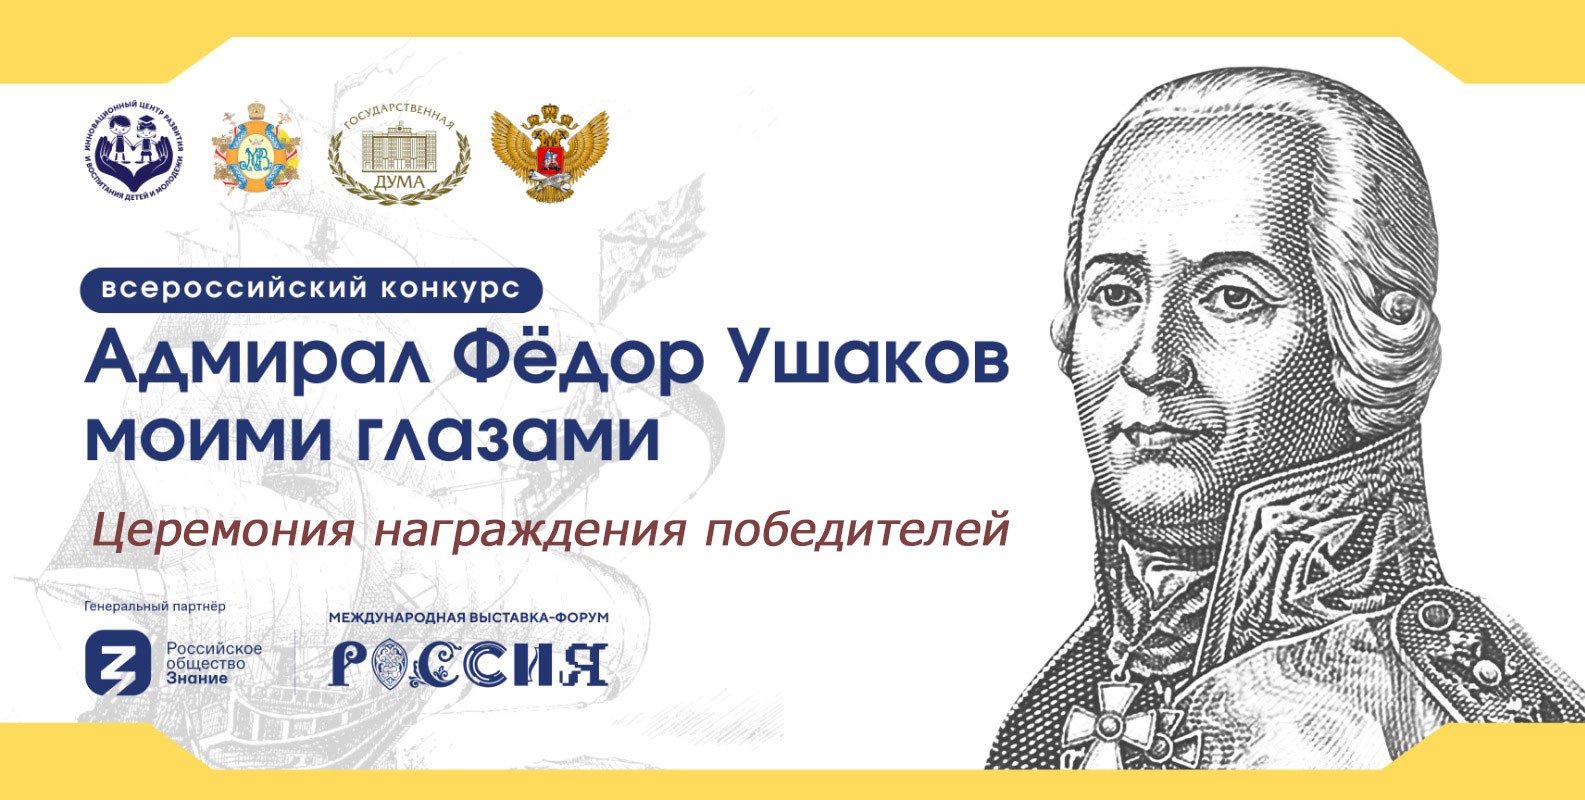 На ВДНХ подведут итоги Всероссийского конкурса «Адмирал Федор Ушаков моими глазами»
